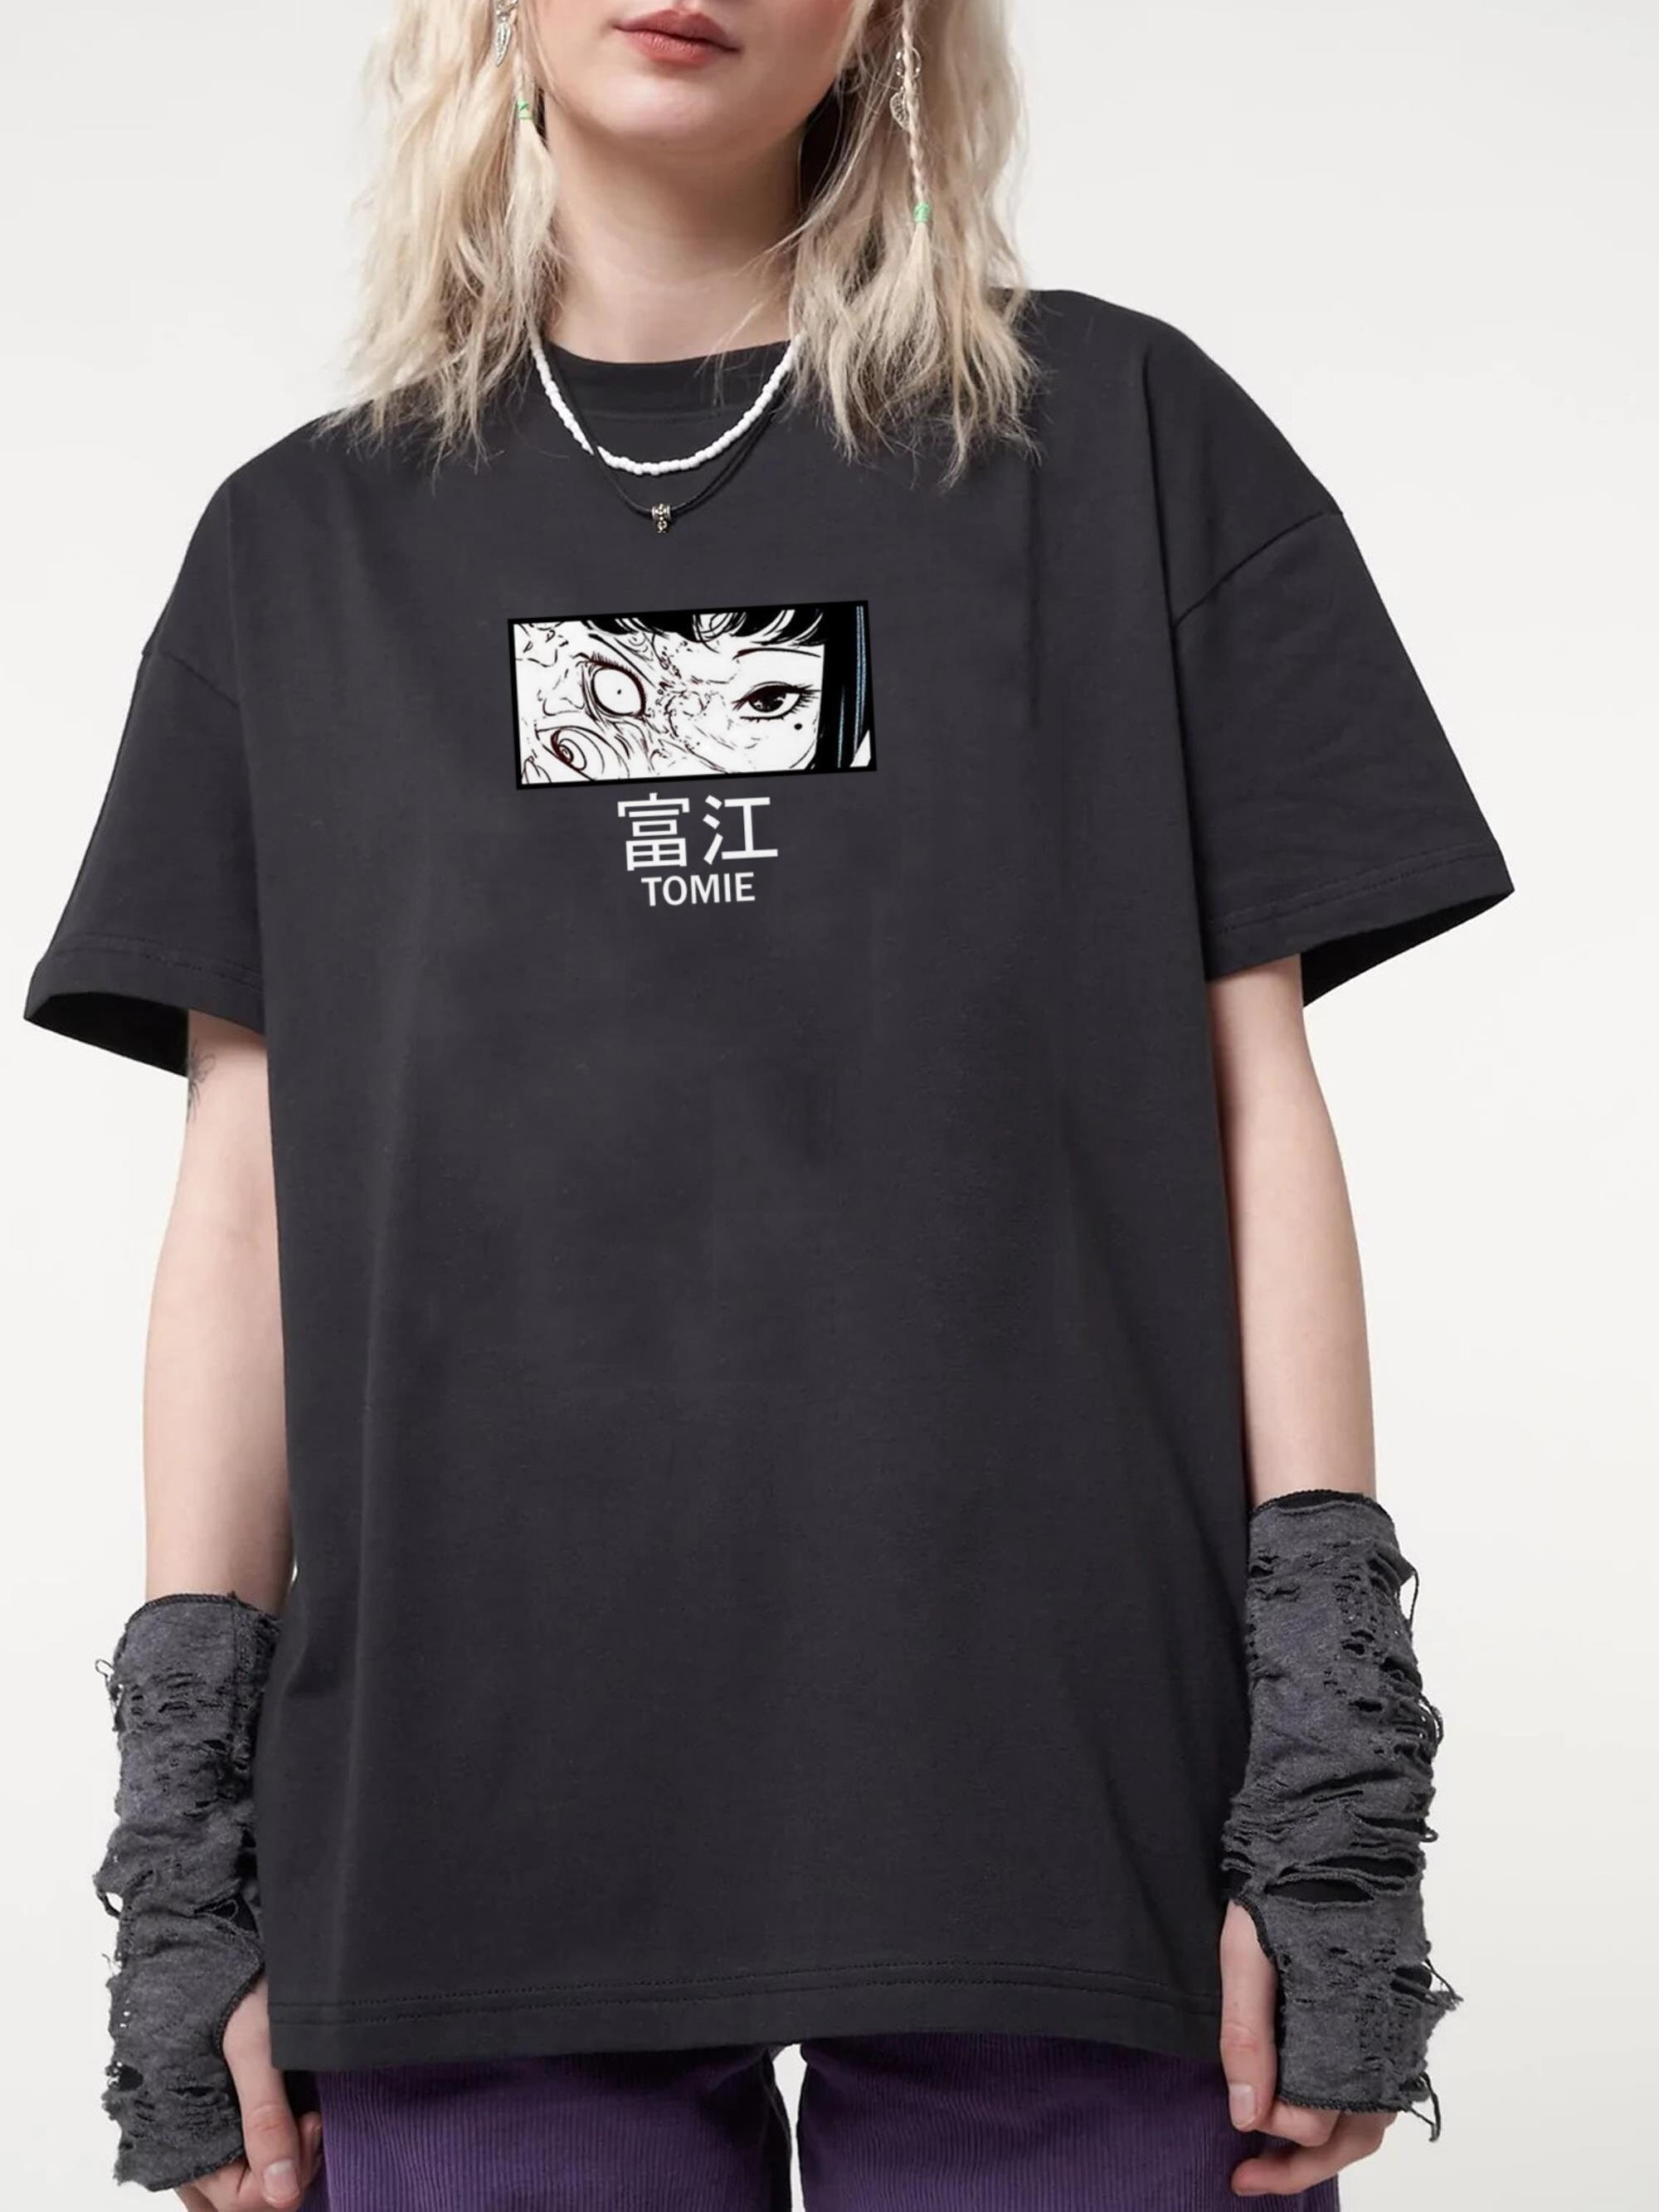 Tomie (Junji Ito) Unisex T-Shirt